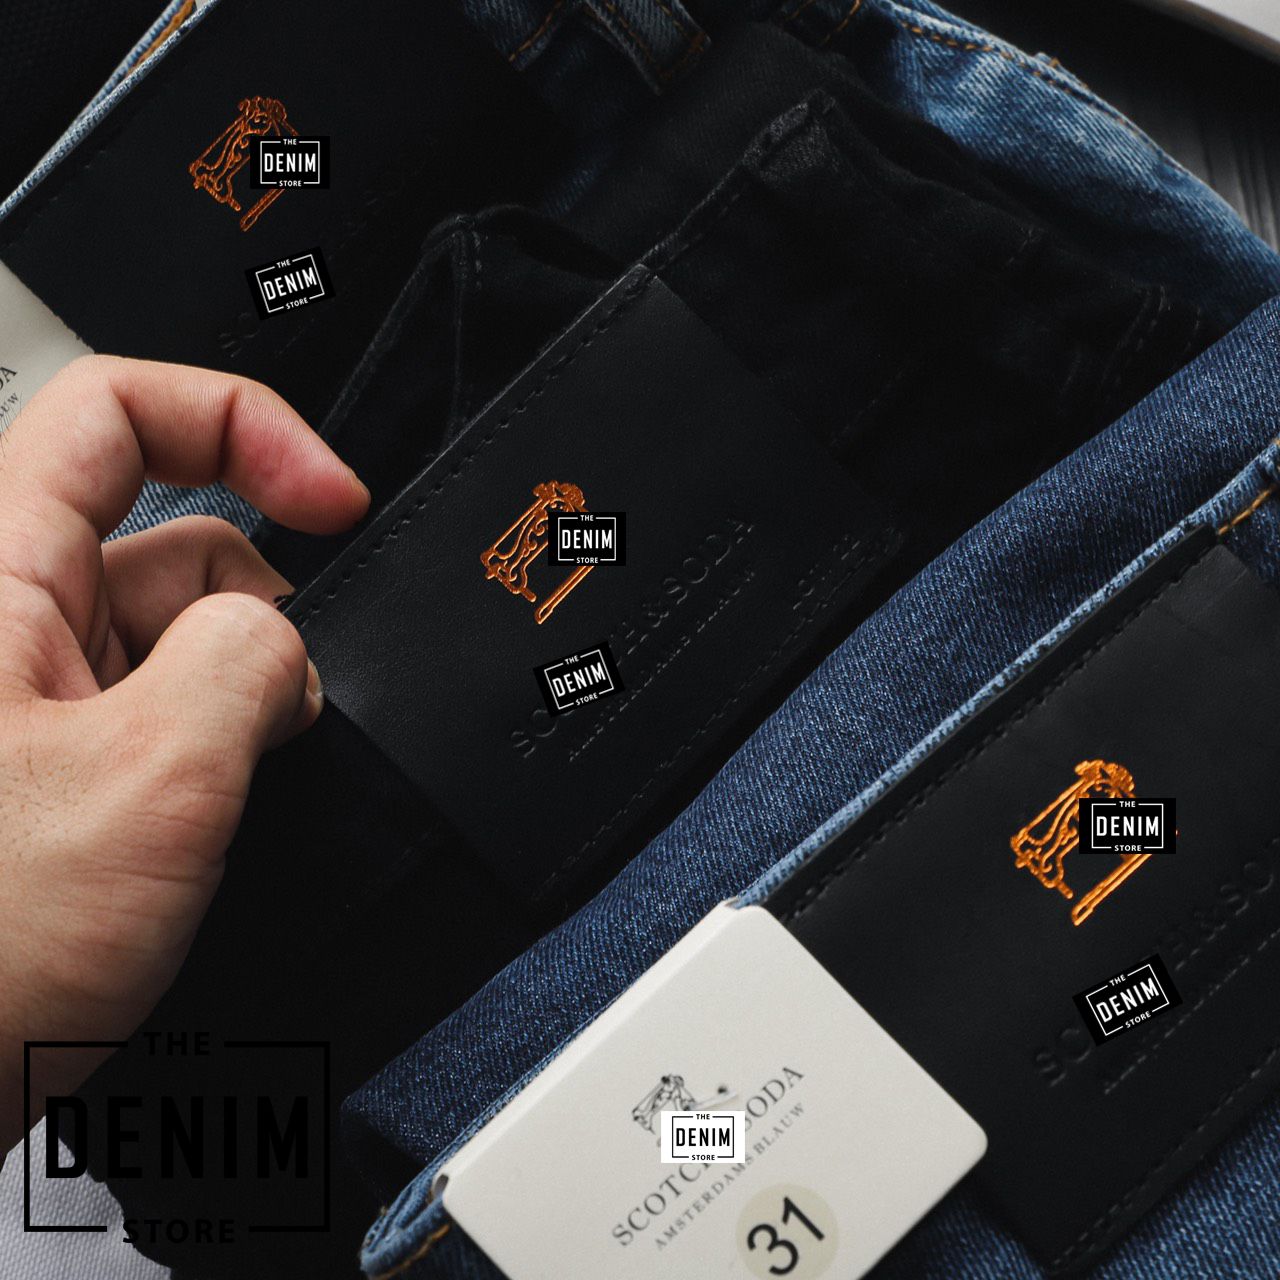 THE DENIM STORE - Chuyên quần áo nam hàng hiệu xuất khẩu - 4